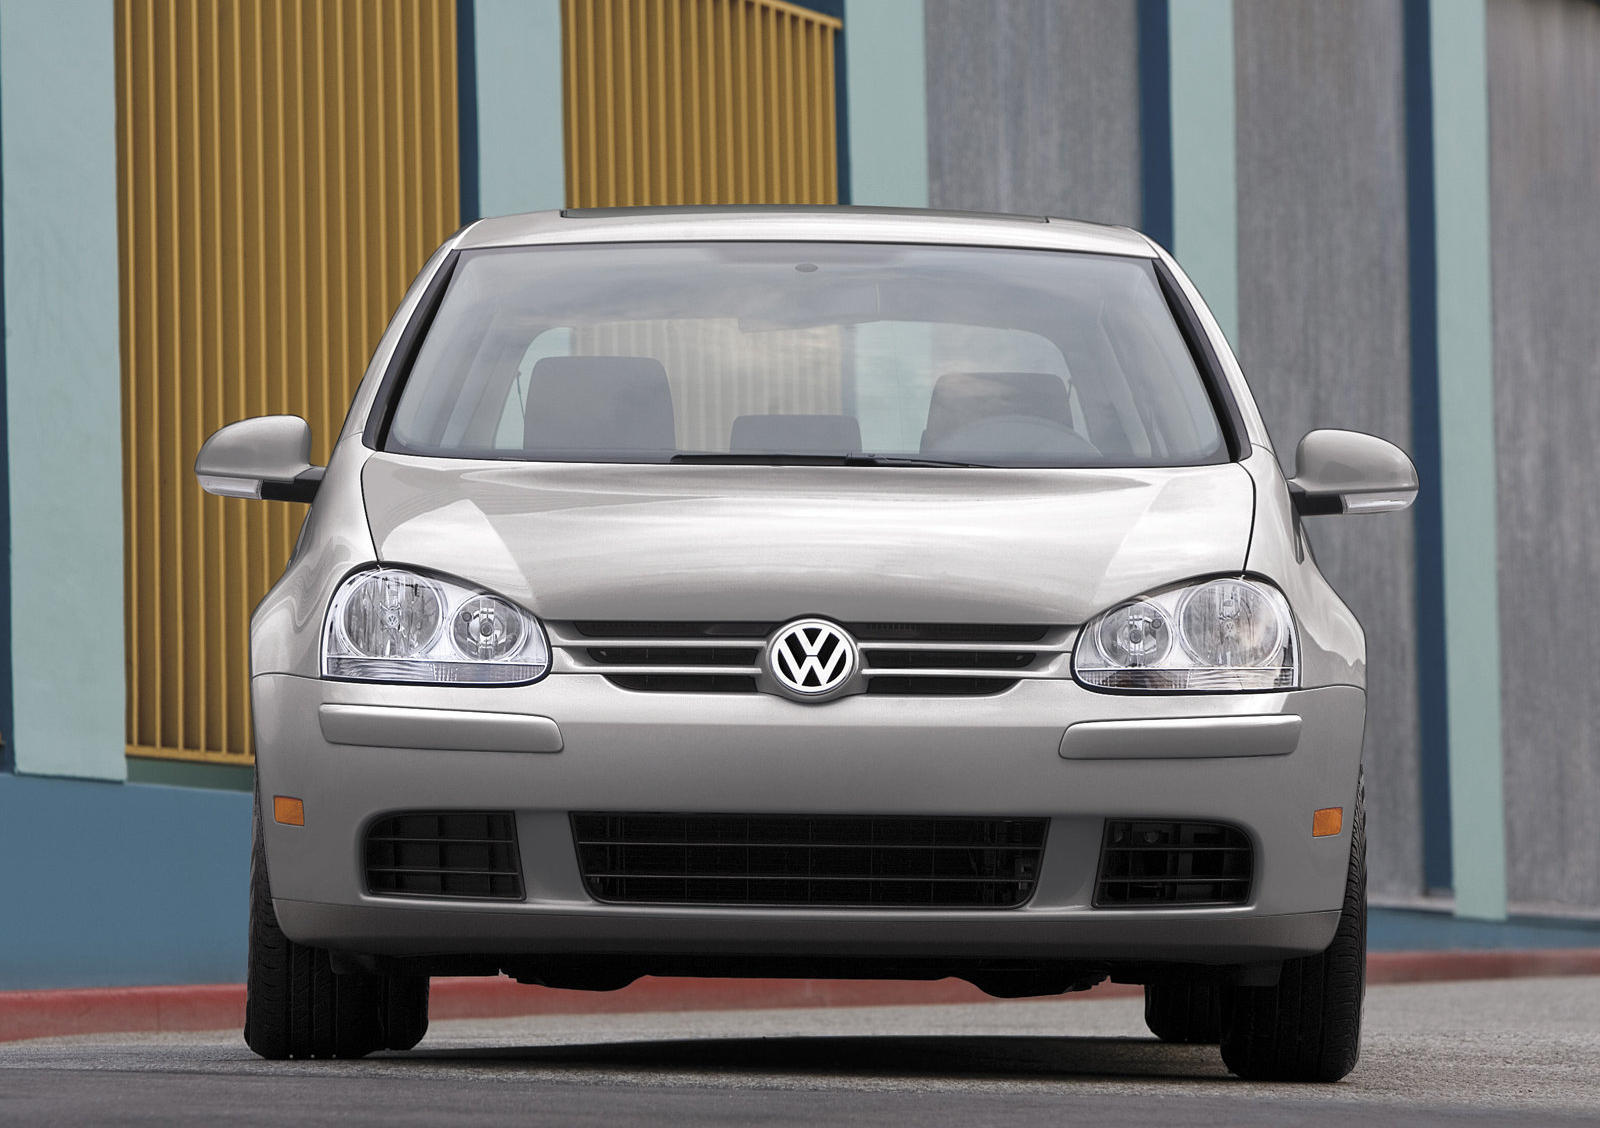 2009 Volkswagen Rabbit Front View